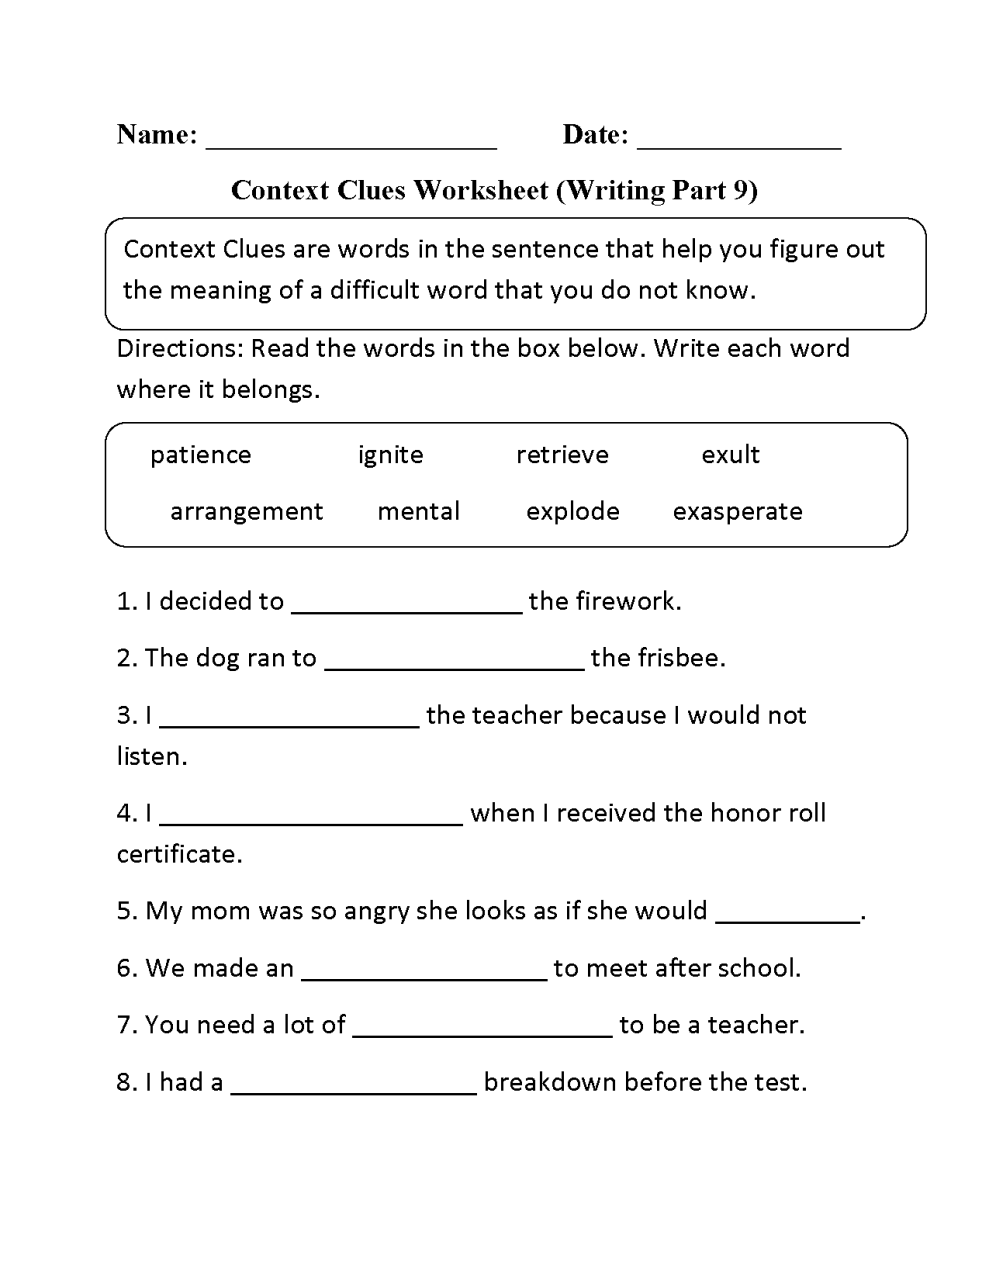 Context Clues Worksheets 3rd Grade Pdf